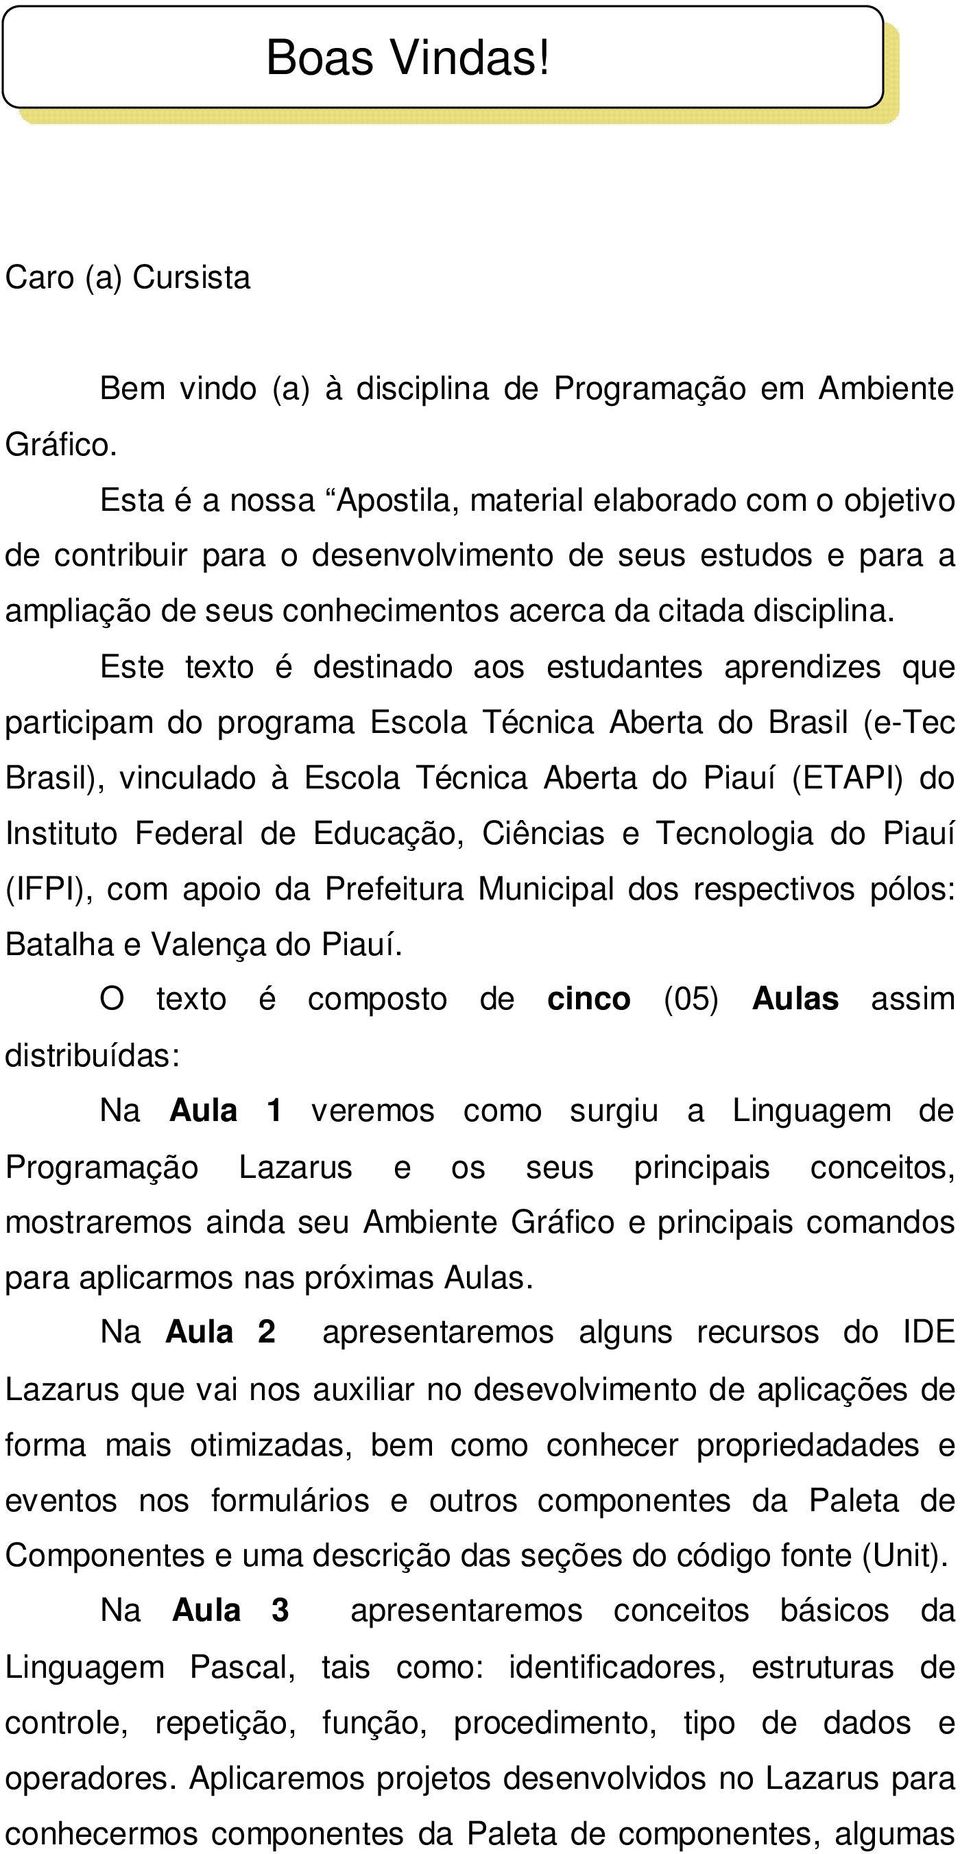 Este texto é destinado aos estudantes aprendizes que participam do programa Escola Técnica Aberta do Brasil (e-tec Brasil), vinculado à Escola Técnica Aberta do Piauí (ETAPI) do Instituto Federal de